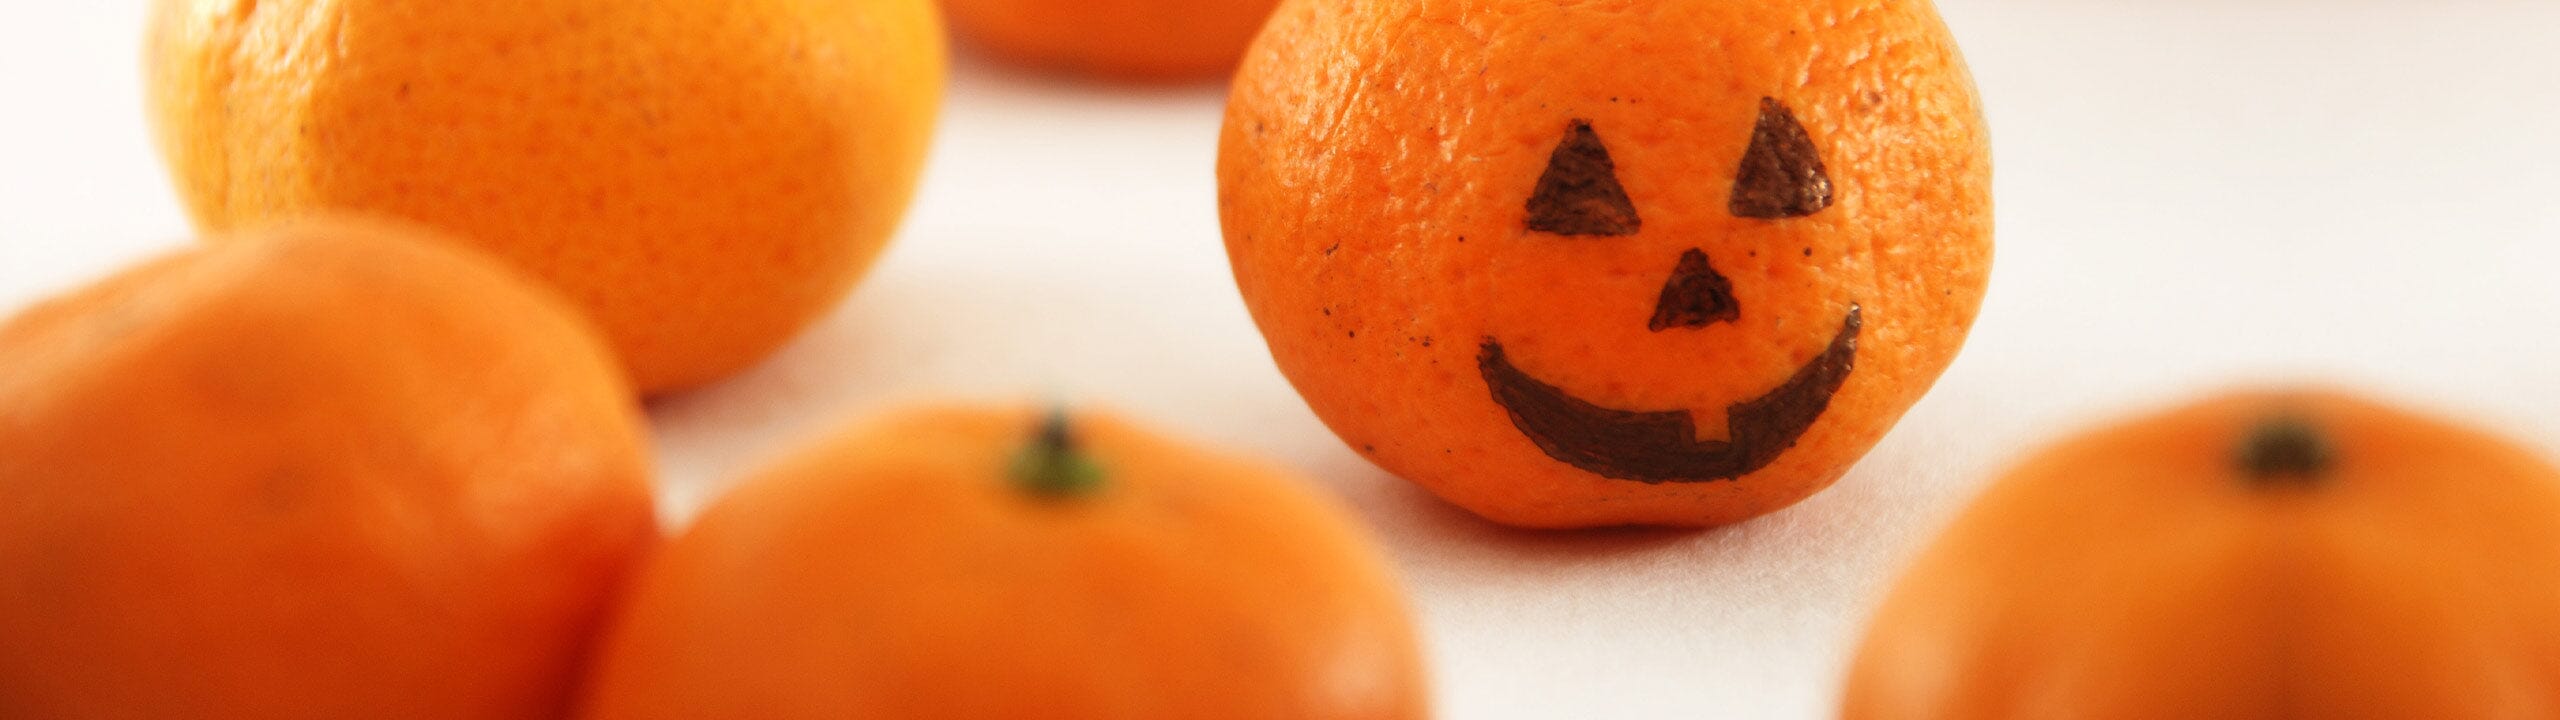 Halloween: Gesunde Alternativen für Süßigkeiten